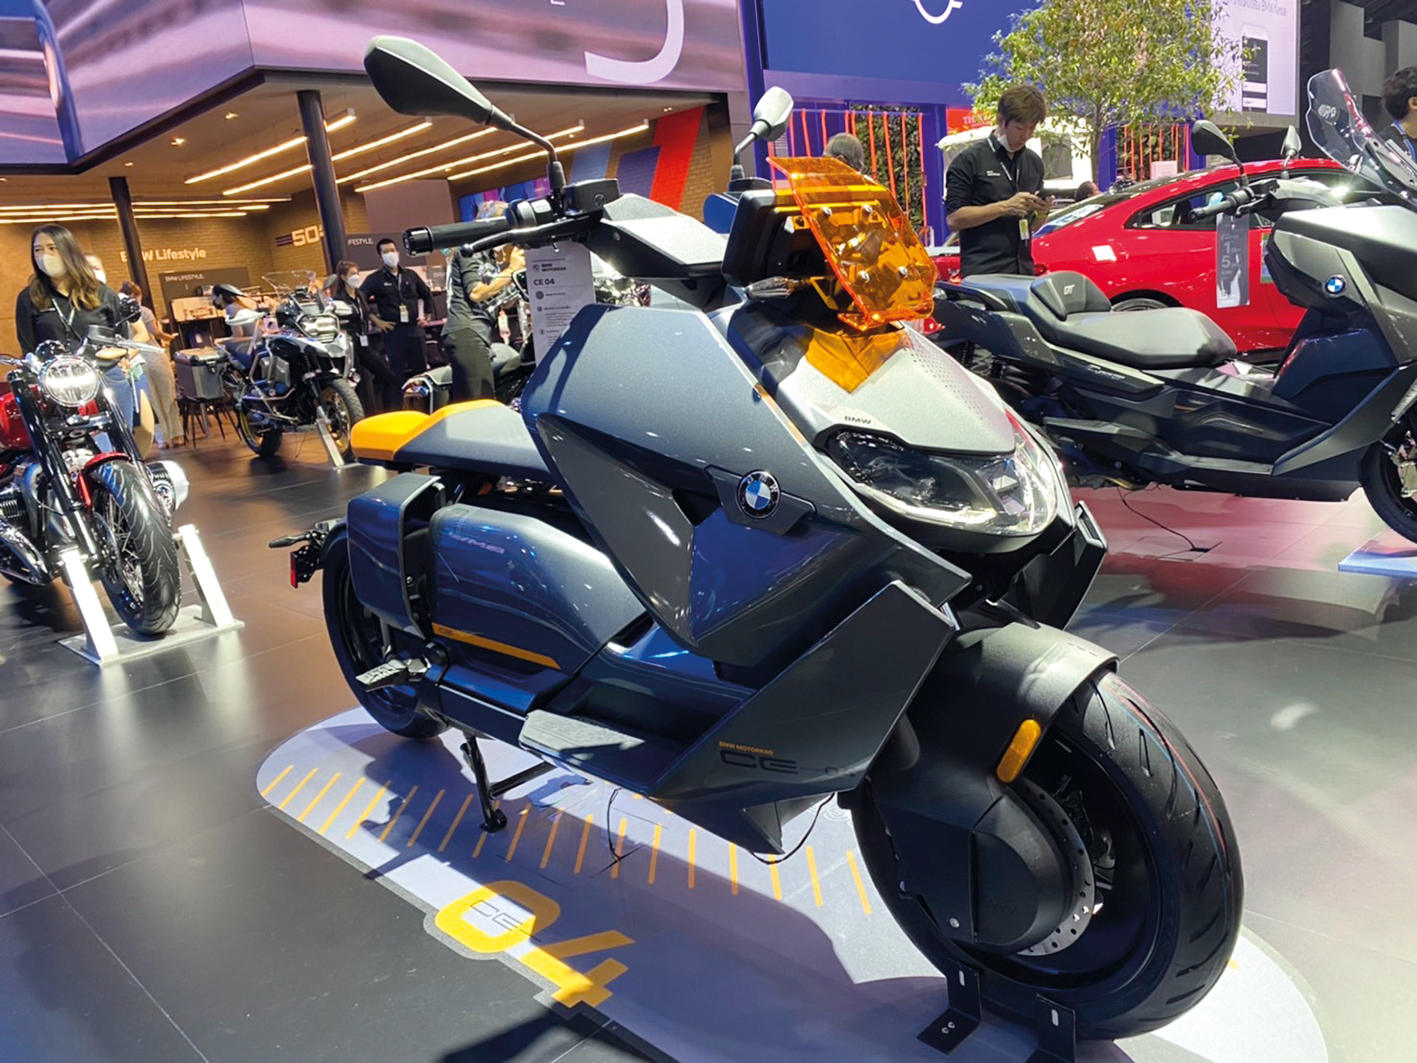 MOTOR EXPO 2022 ยอดขายรถพุ่งกว่า 4 หมื่นคัน เงินหมุนเวียนกว่า 5 หมื่นล้านบาท